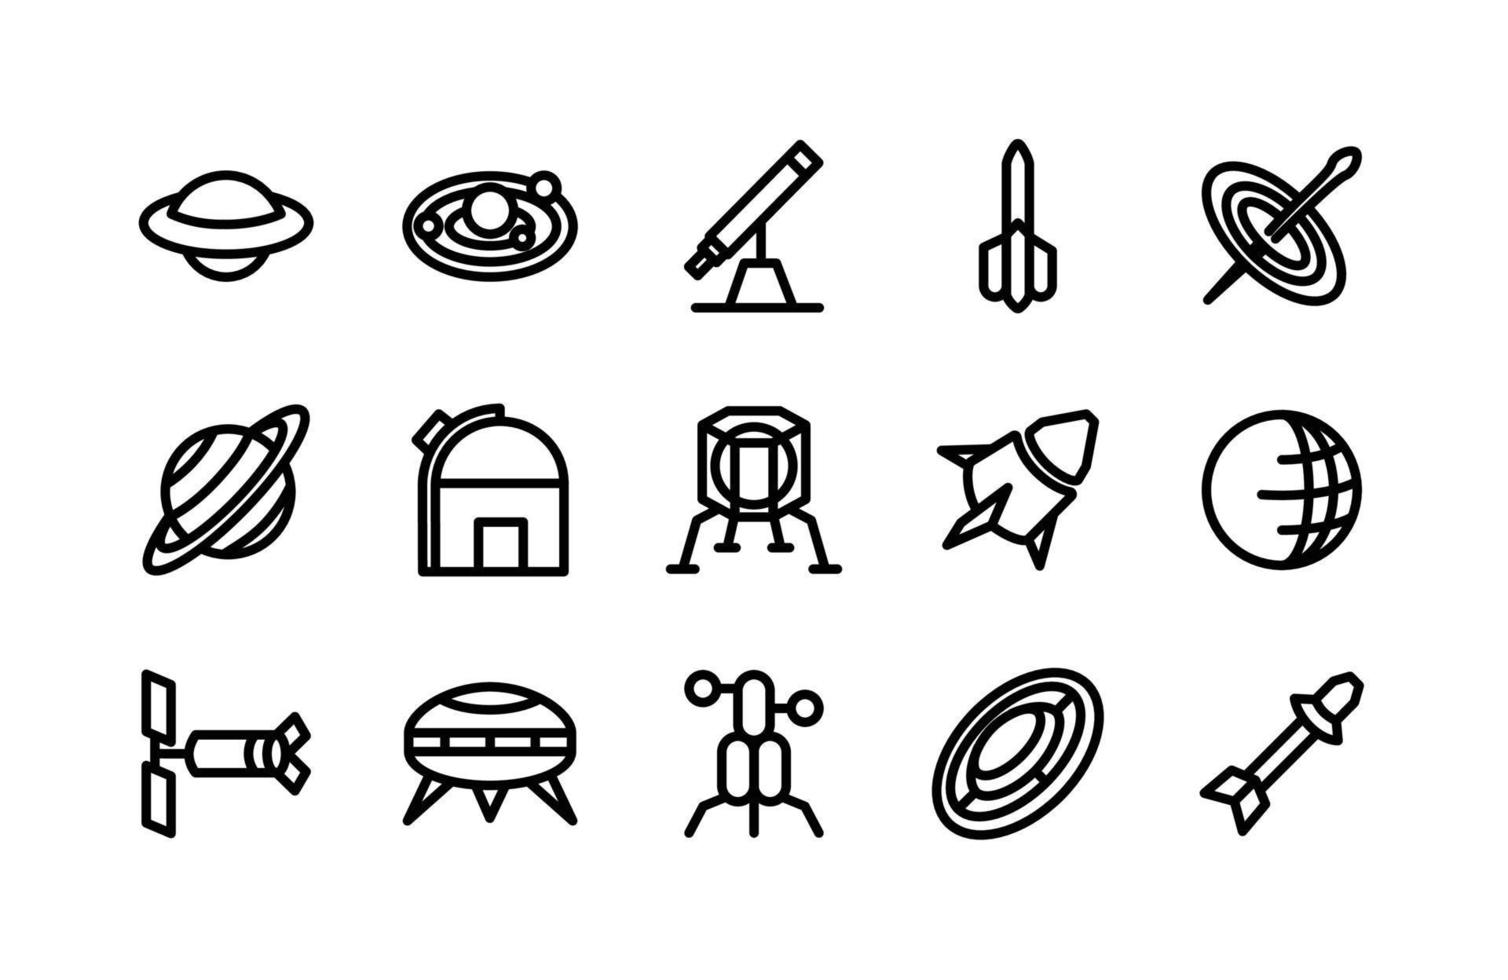 Symbole für Weltraumlinien, einschließlich UFO, Sonnensystem, Teleskop, Rakete, Schwarzes Loch, Saturn, Observatorium, Mondlander, Raumfahrzeug, Erde, Teleskop, UFO, Mondlander, Scheibe, Rakete vektor